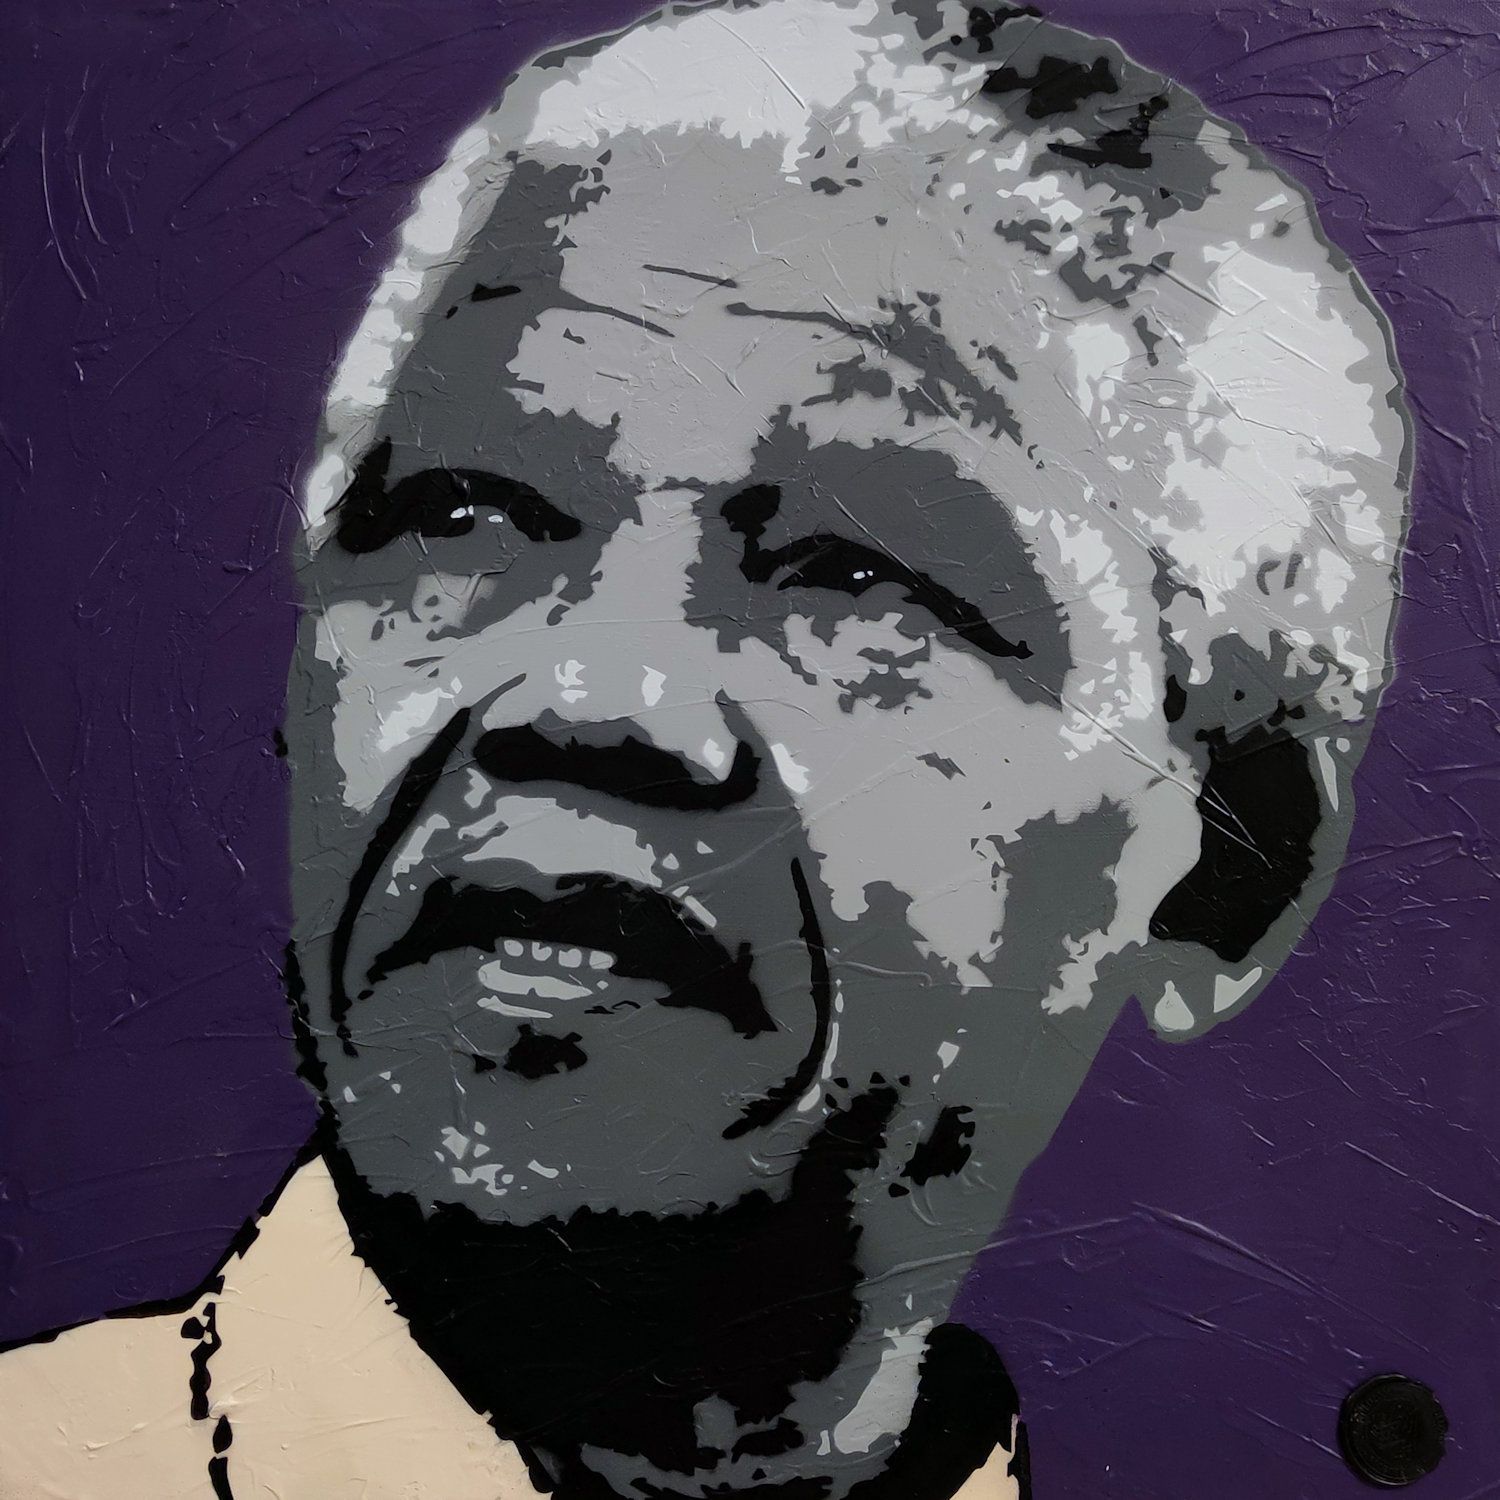 DED2008 DED2008

Vergiss niemals Mandela, 2020

Acryl auf Leinwand

Gezeichnet

&hellip;